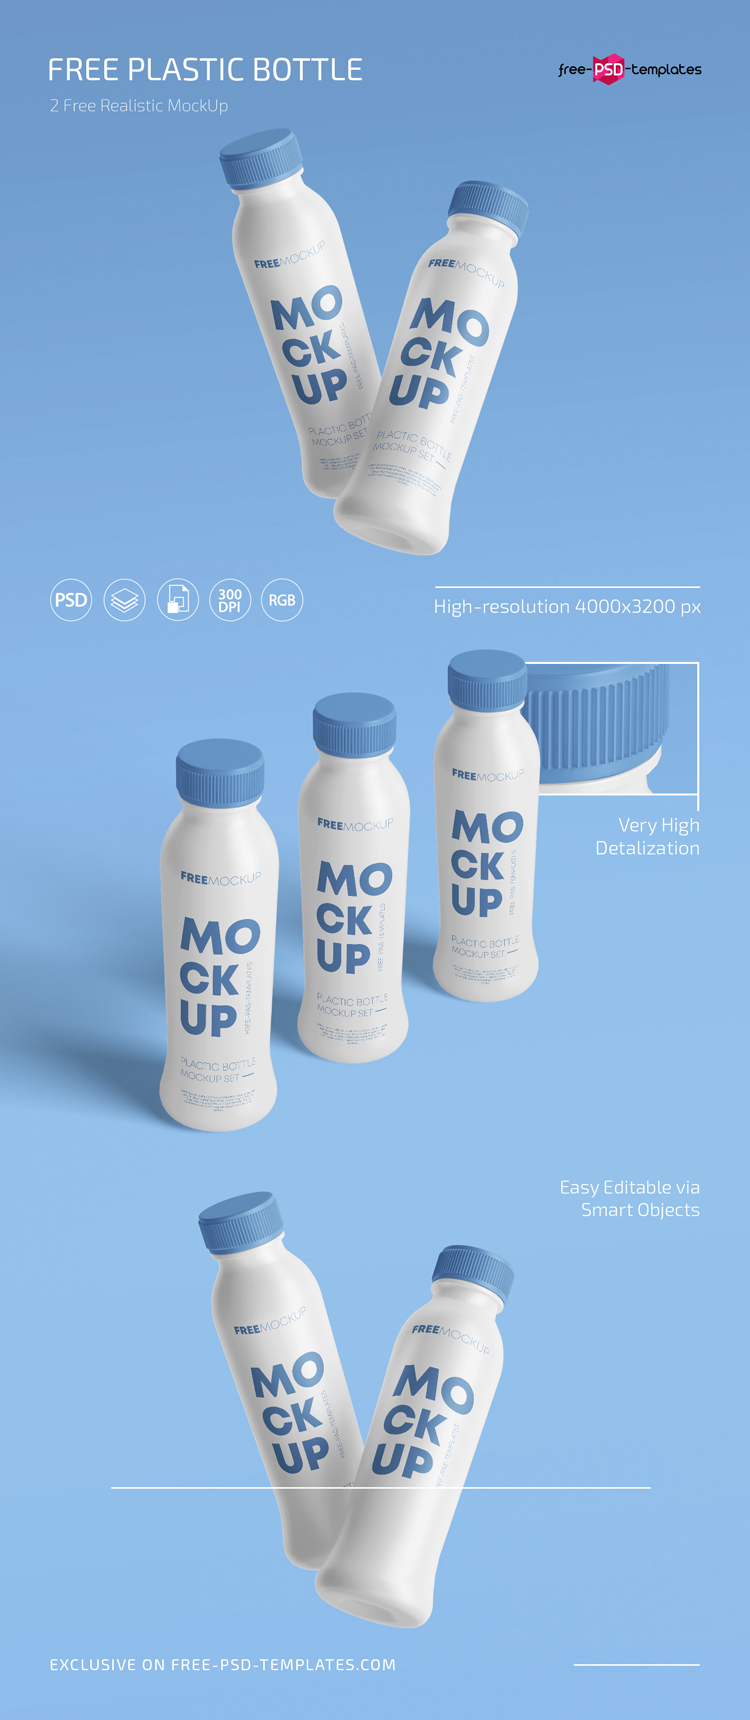 Download Free Plastic Bottle Mockup Set Template Free Psd Templates PSD Mockup Templates